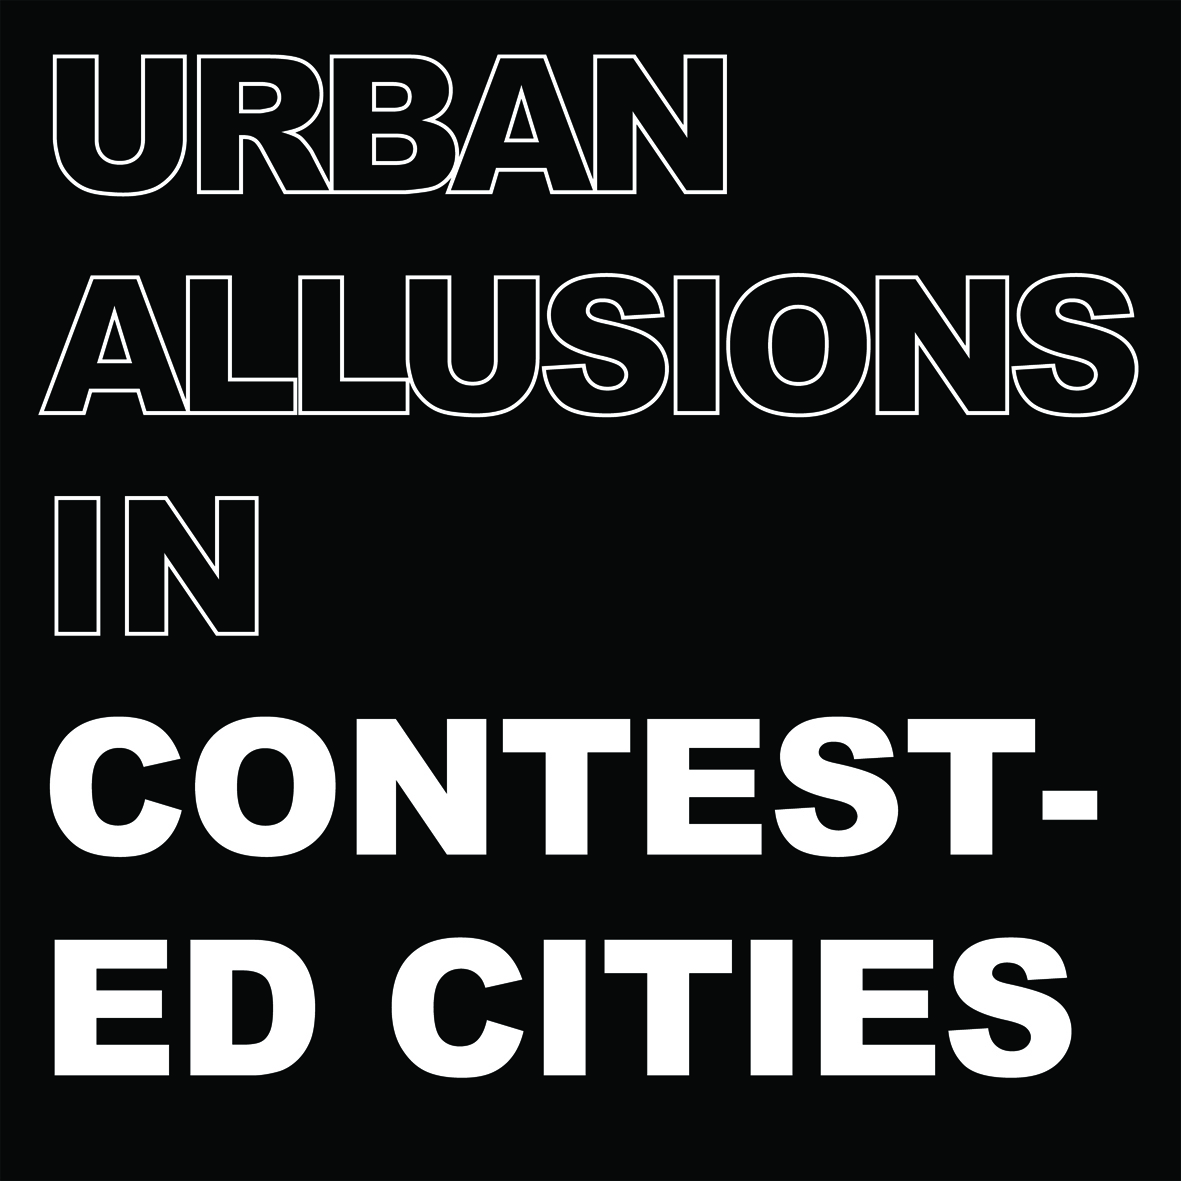 Urban allusions cover